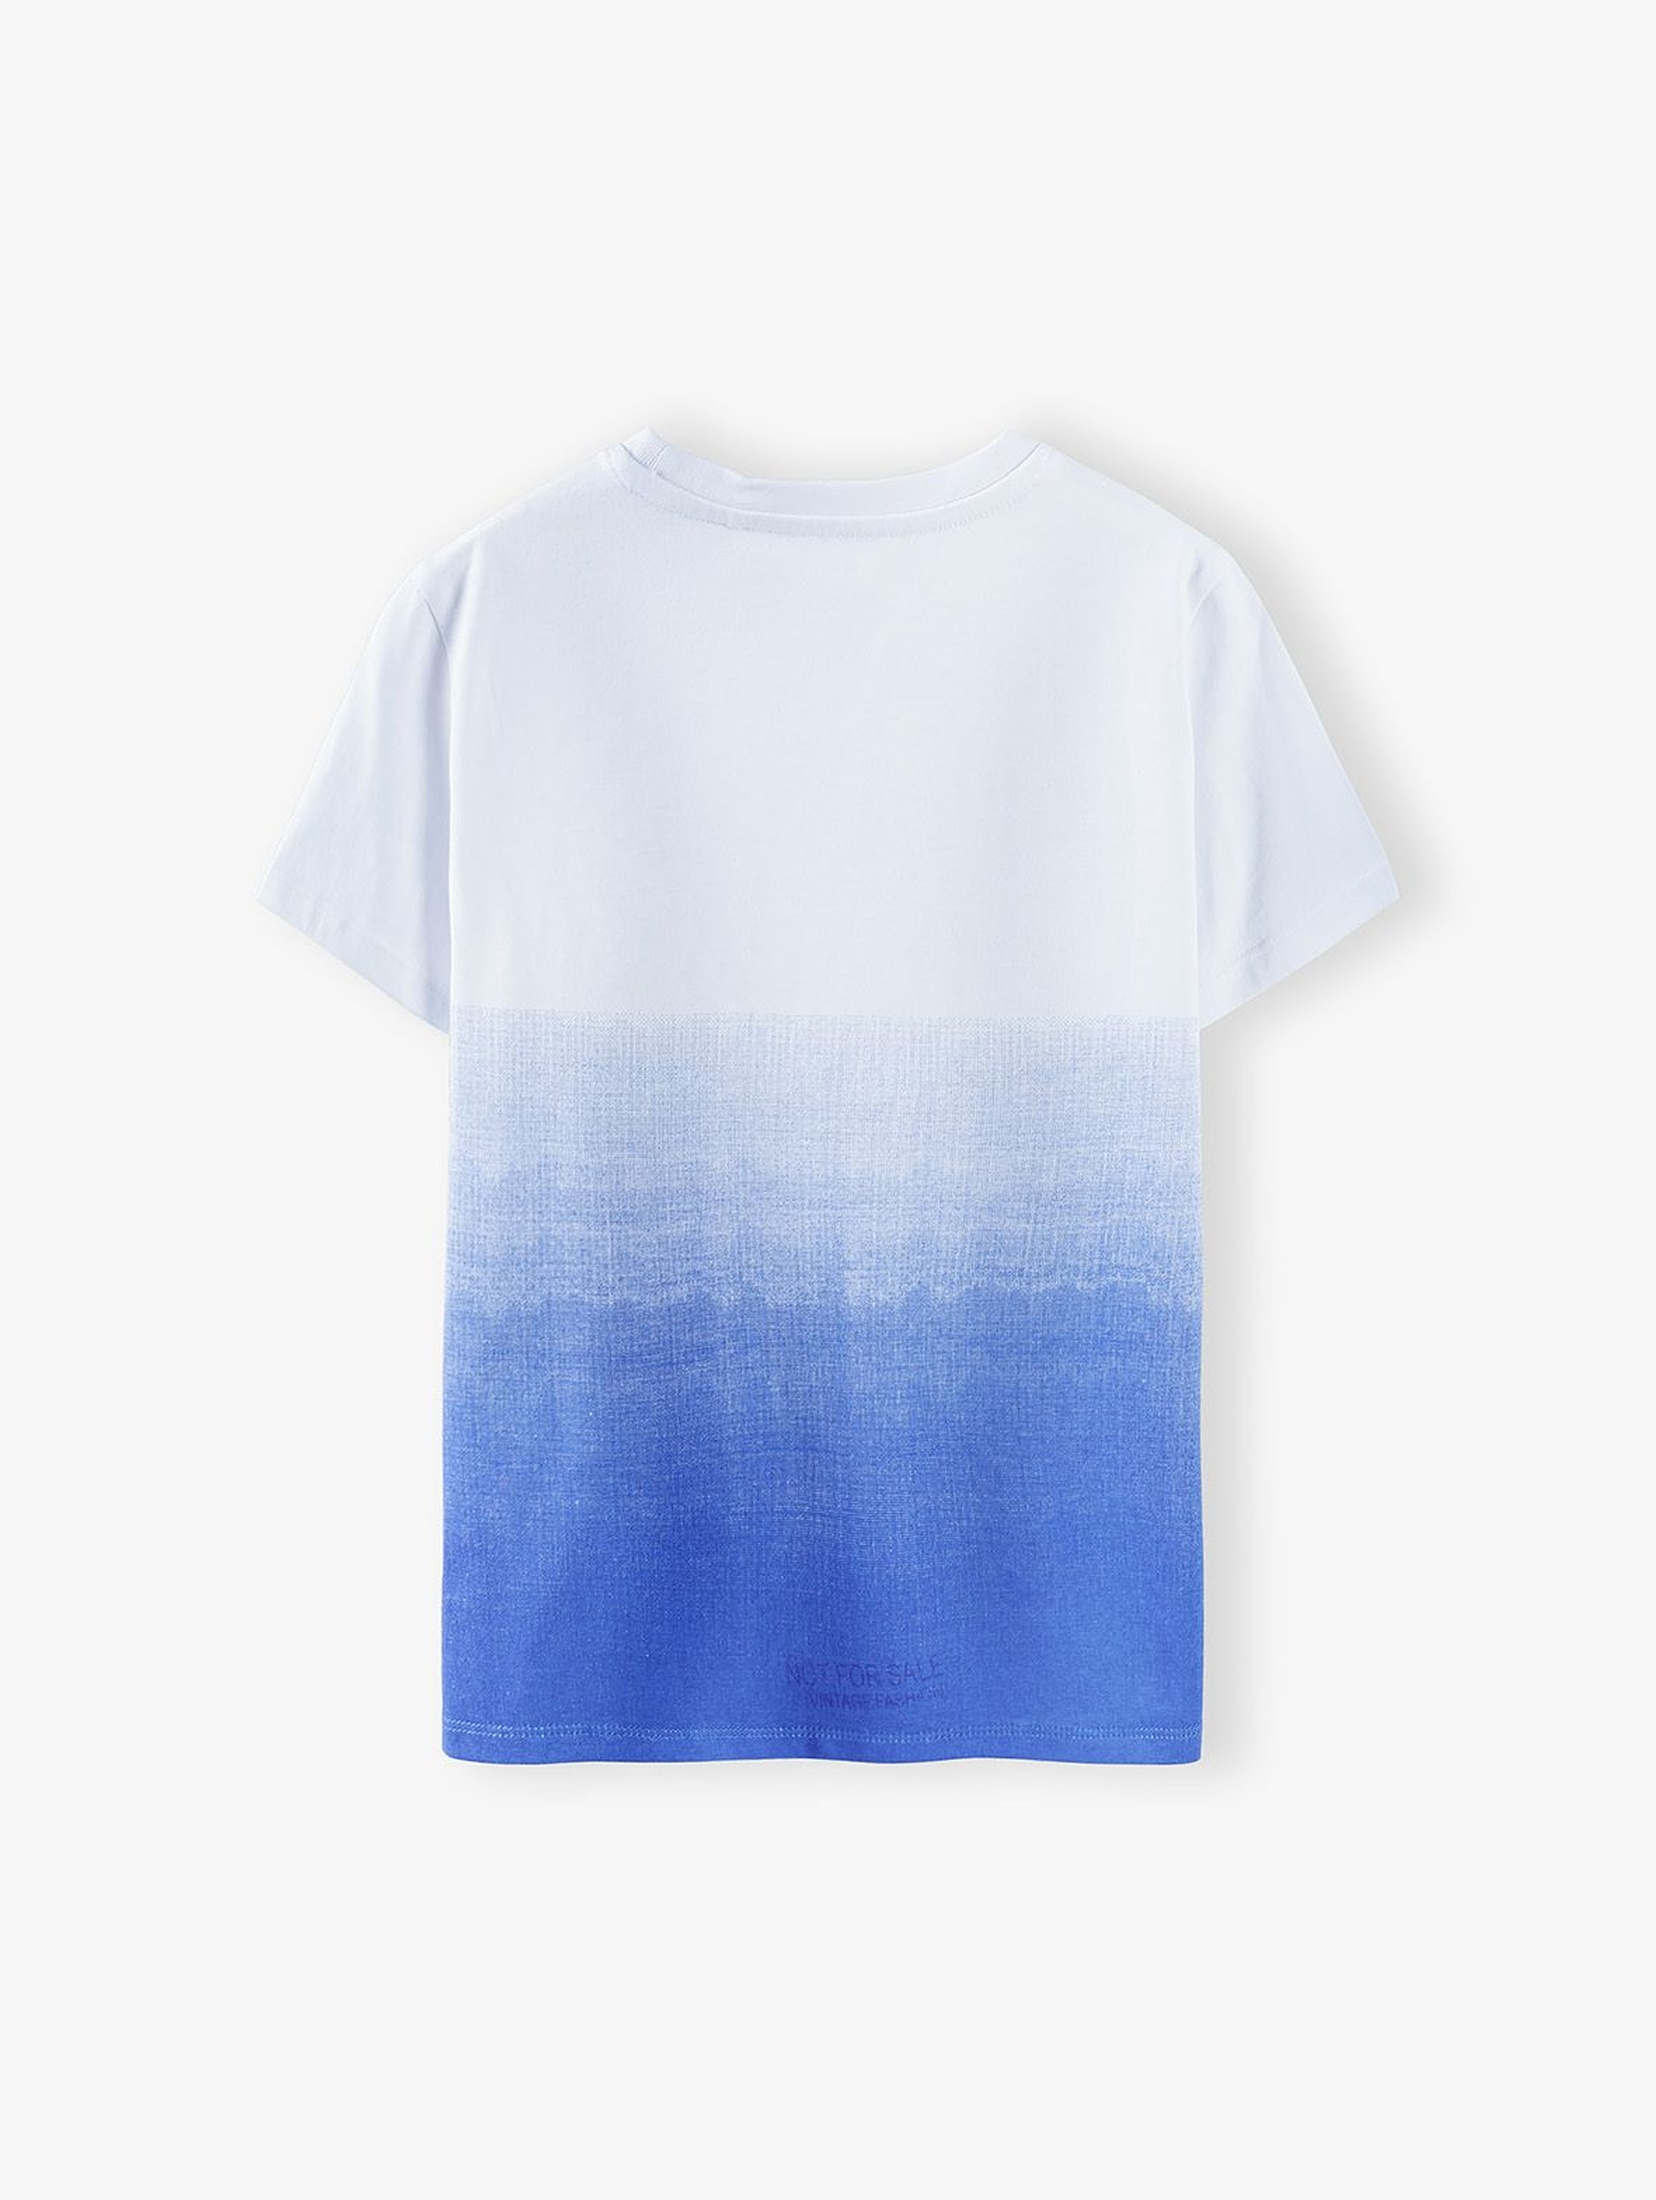 T-shirt chłopięcy biało-niebieski z rekinem